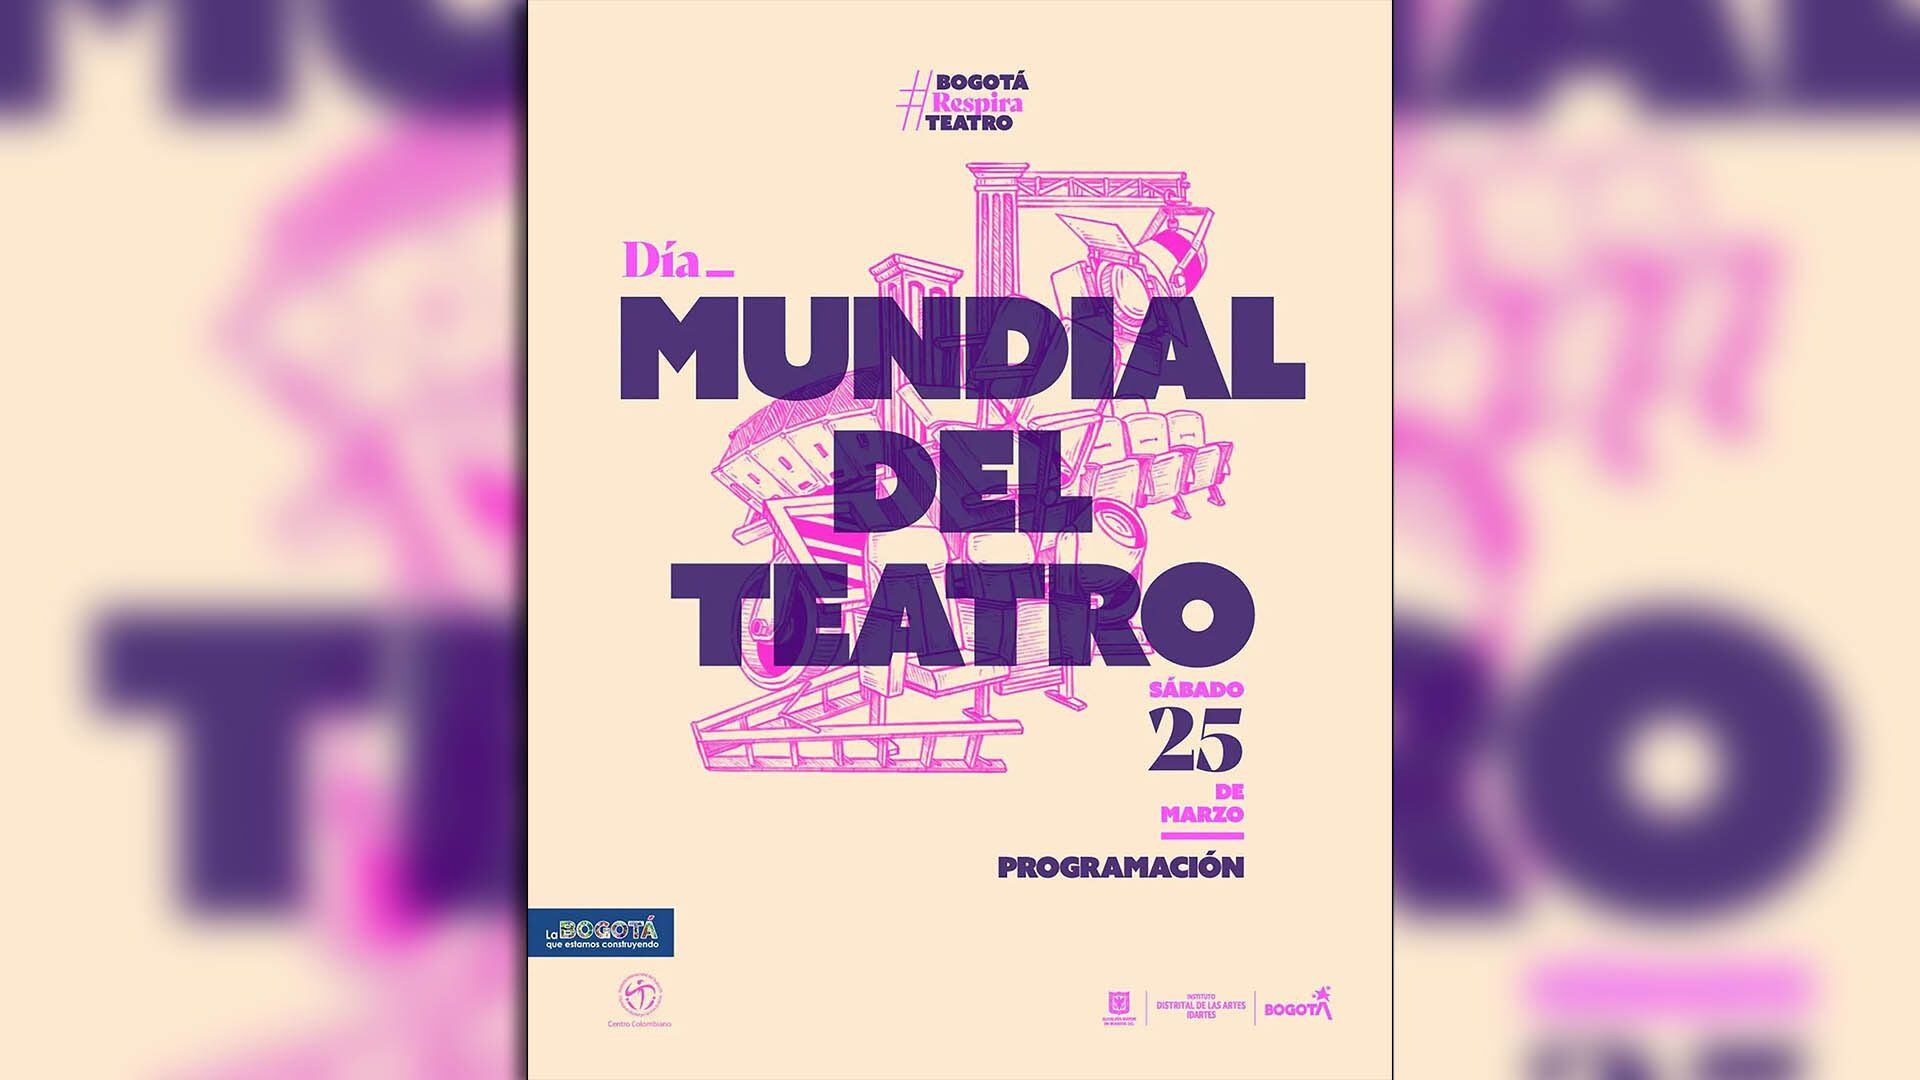 Día-mundial-del-Teatro-esta-es-la-programación-de-la-celebración-en-Bogotá portada